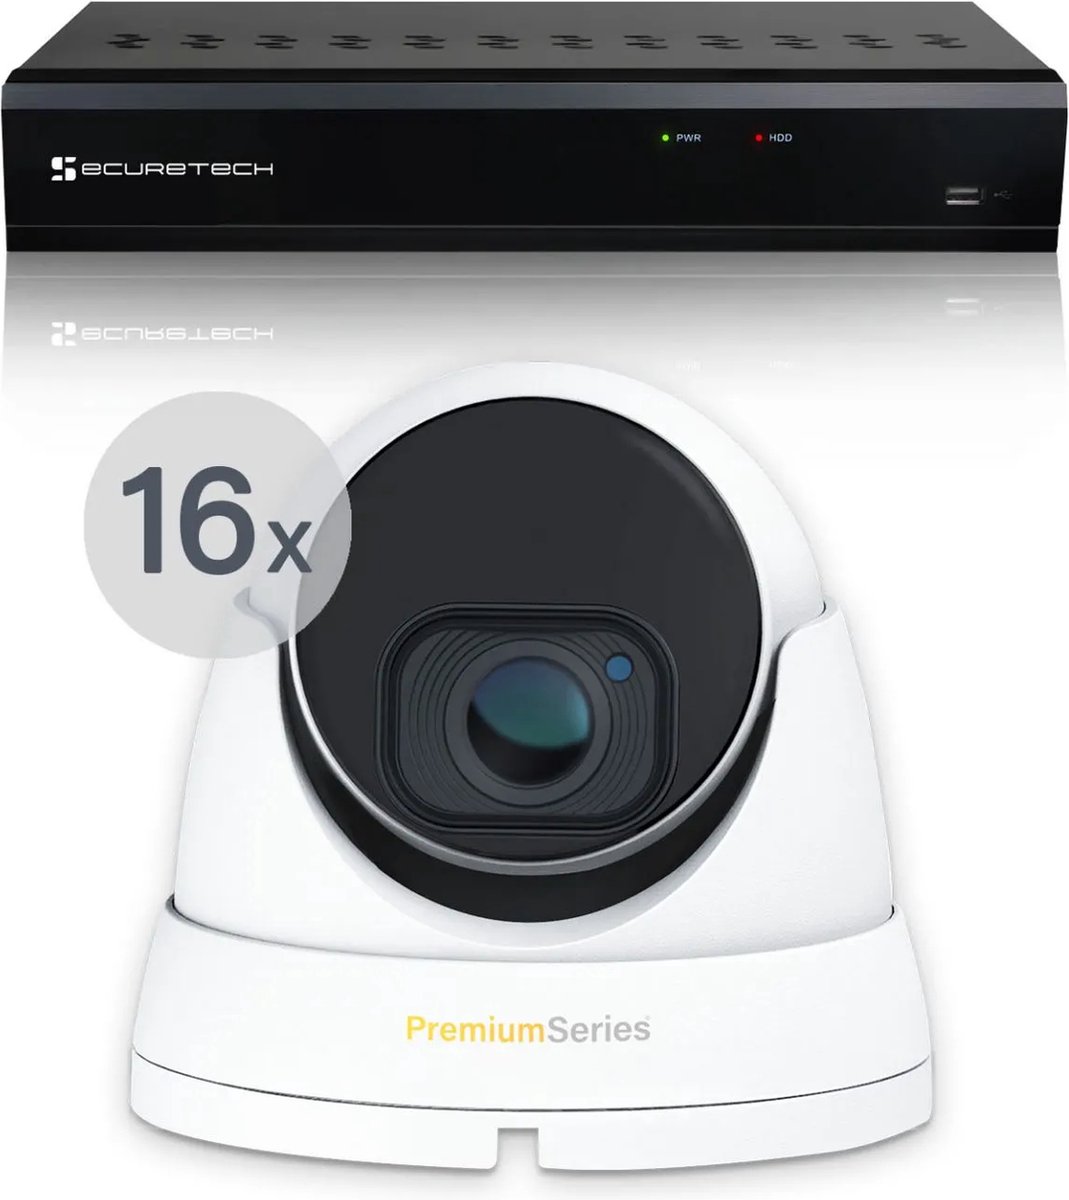 Securetech bekabeld camerabewaking systeem - met 16 beveiligingscamera - voor binnen & buiten - haarscherp beeldkwaliteit - nachtzicht tot 30 meter - software voor smartphone & pc